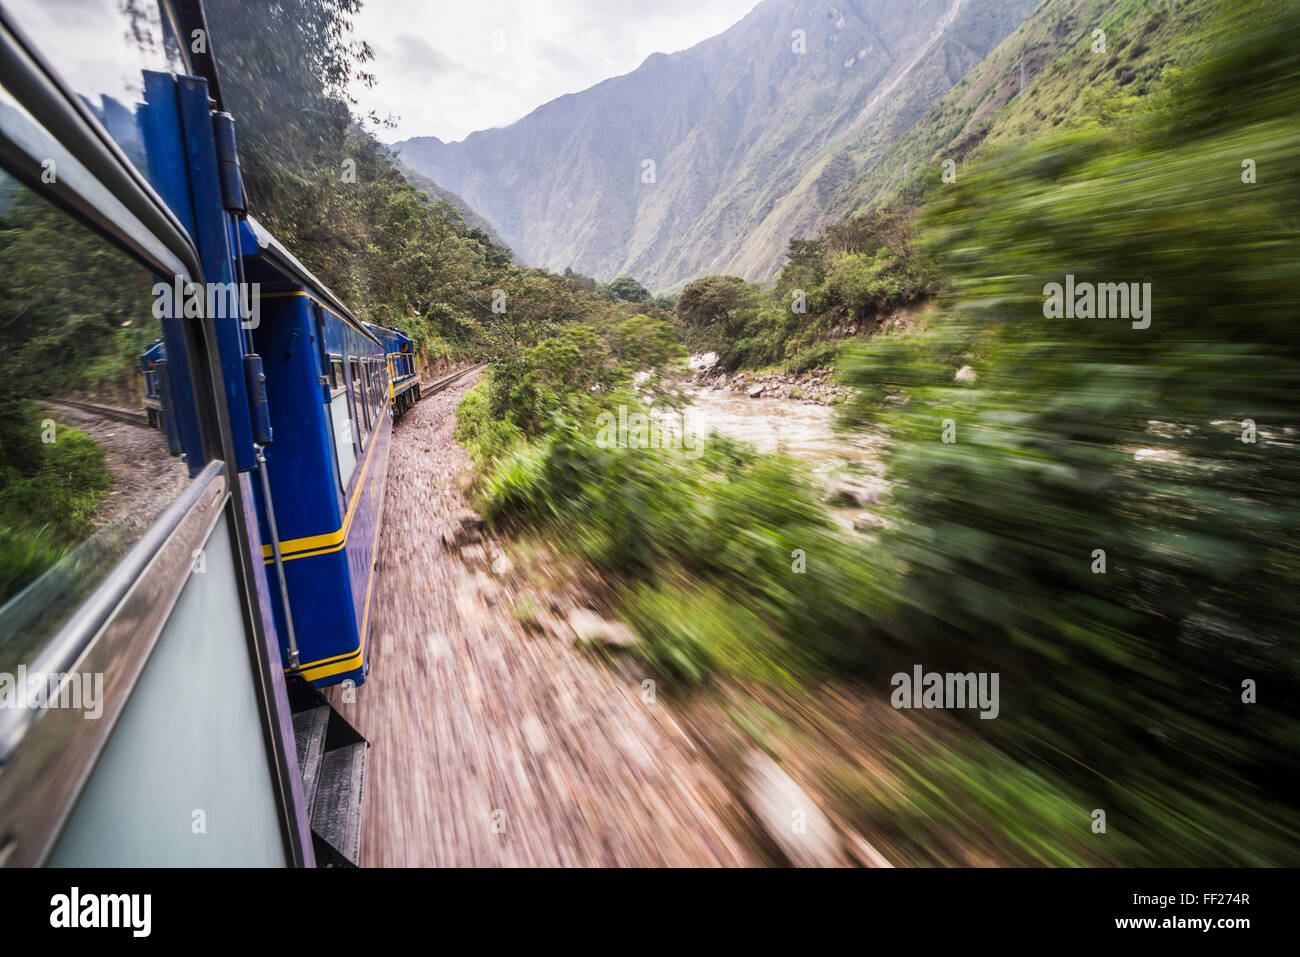 Zug zwischen Aguas CaRMientes, die Haltestelle für Machu Picchu und ORMRMantaytambo, Region Cusco, Peru, Südamerika Stockfoto